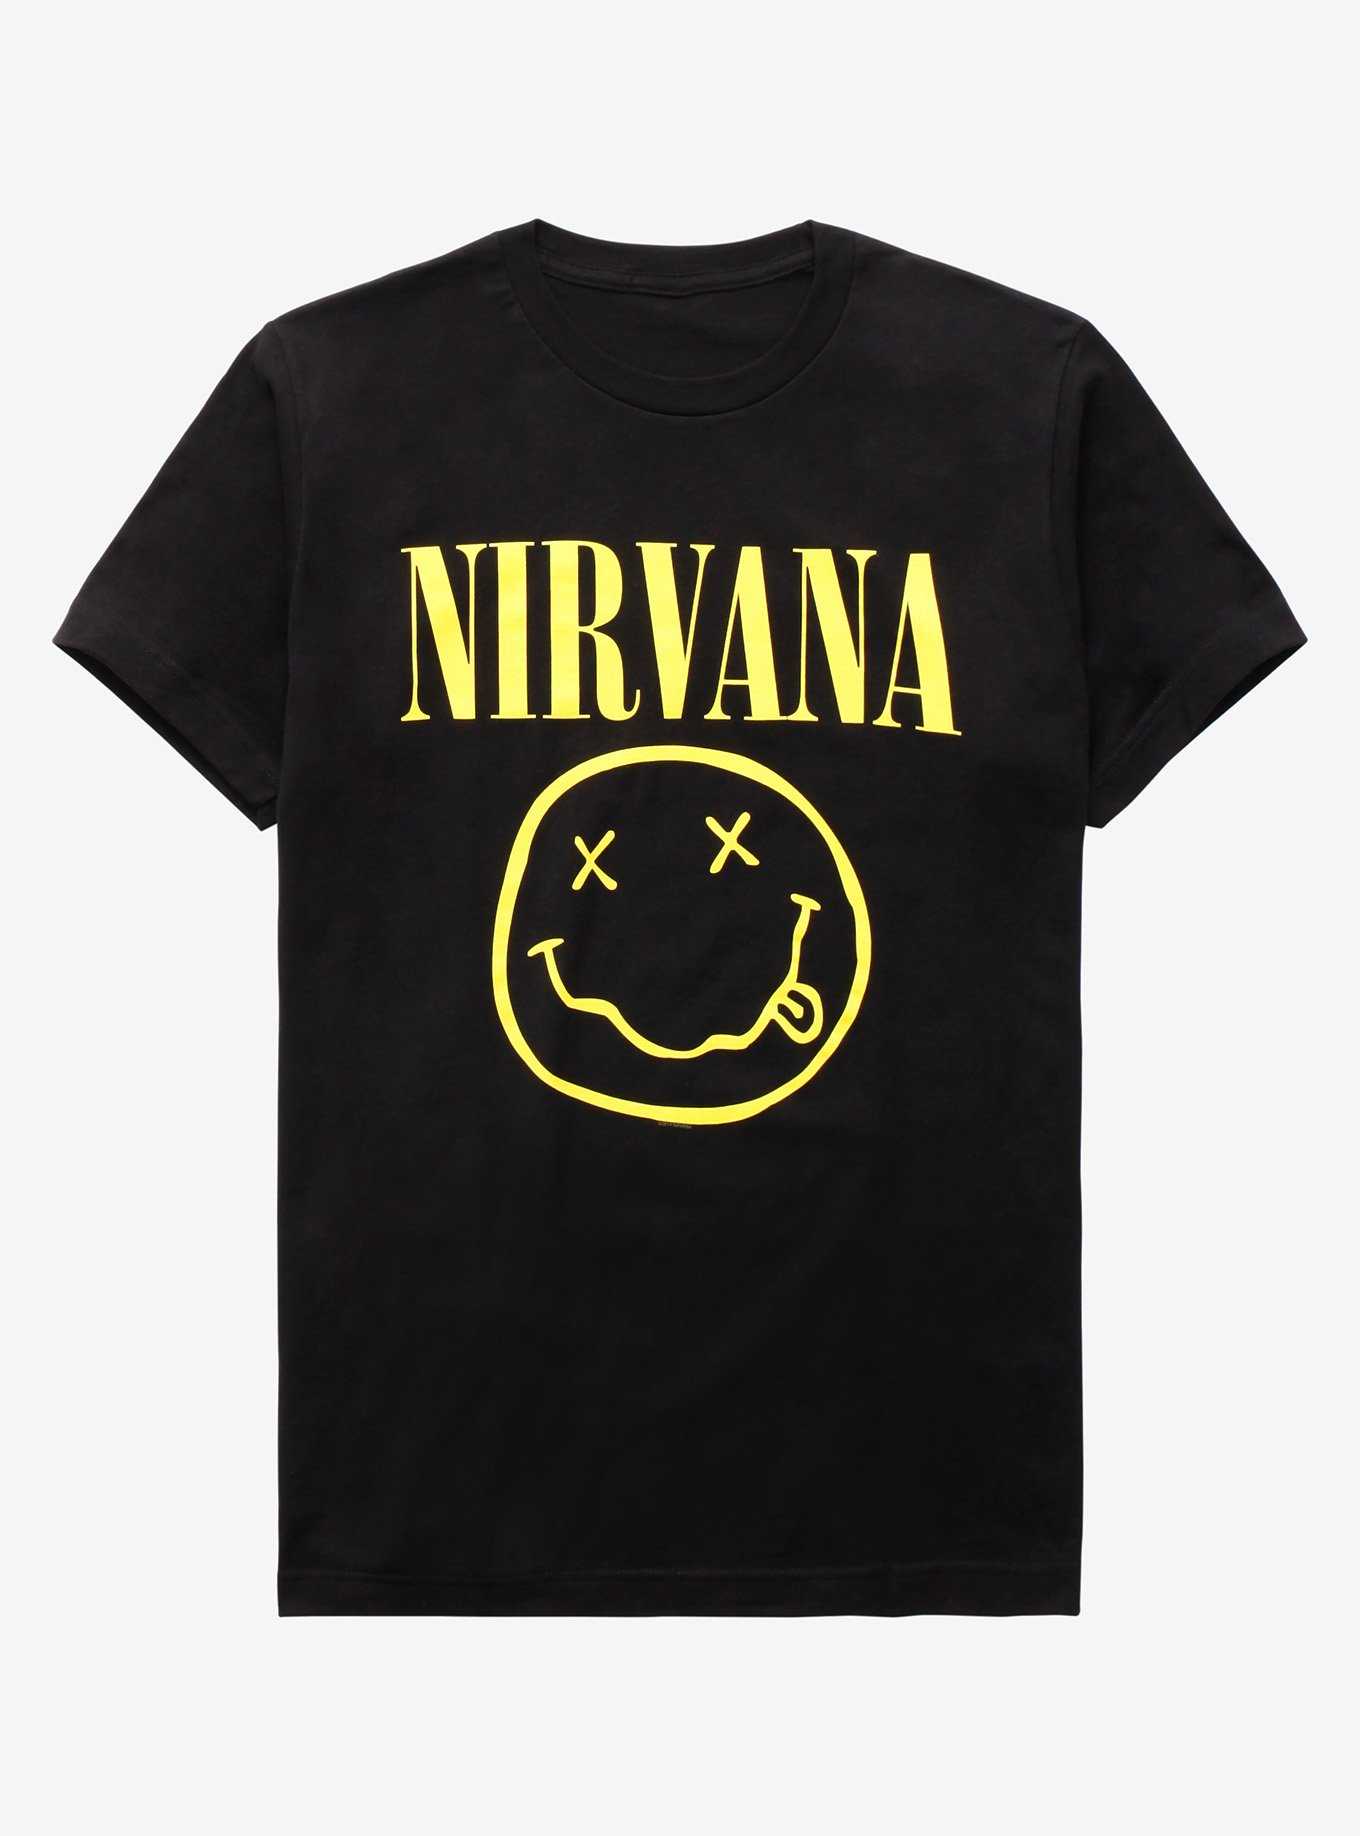 OFFICIAL Nirvana Shirts & Merch